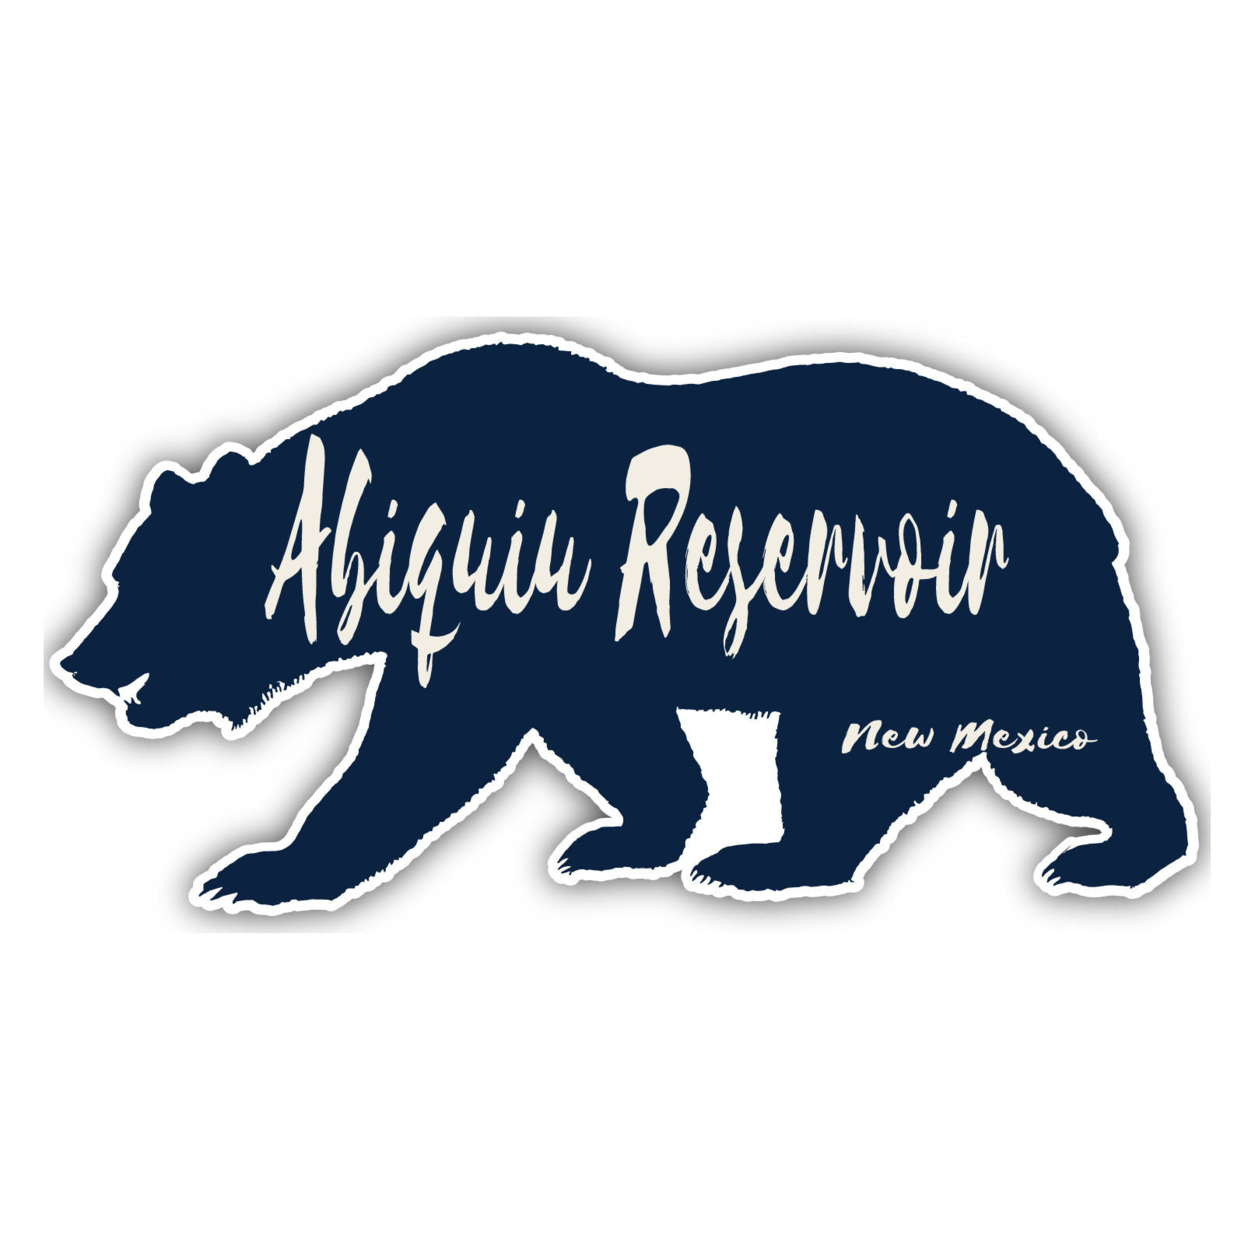 Abiquiu Reservoir New Mexico Souvenir Decorative Stickers (Choose Theme And Size) - Single Unit, 10-Inch, Bear